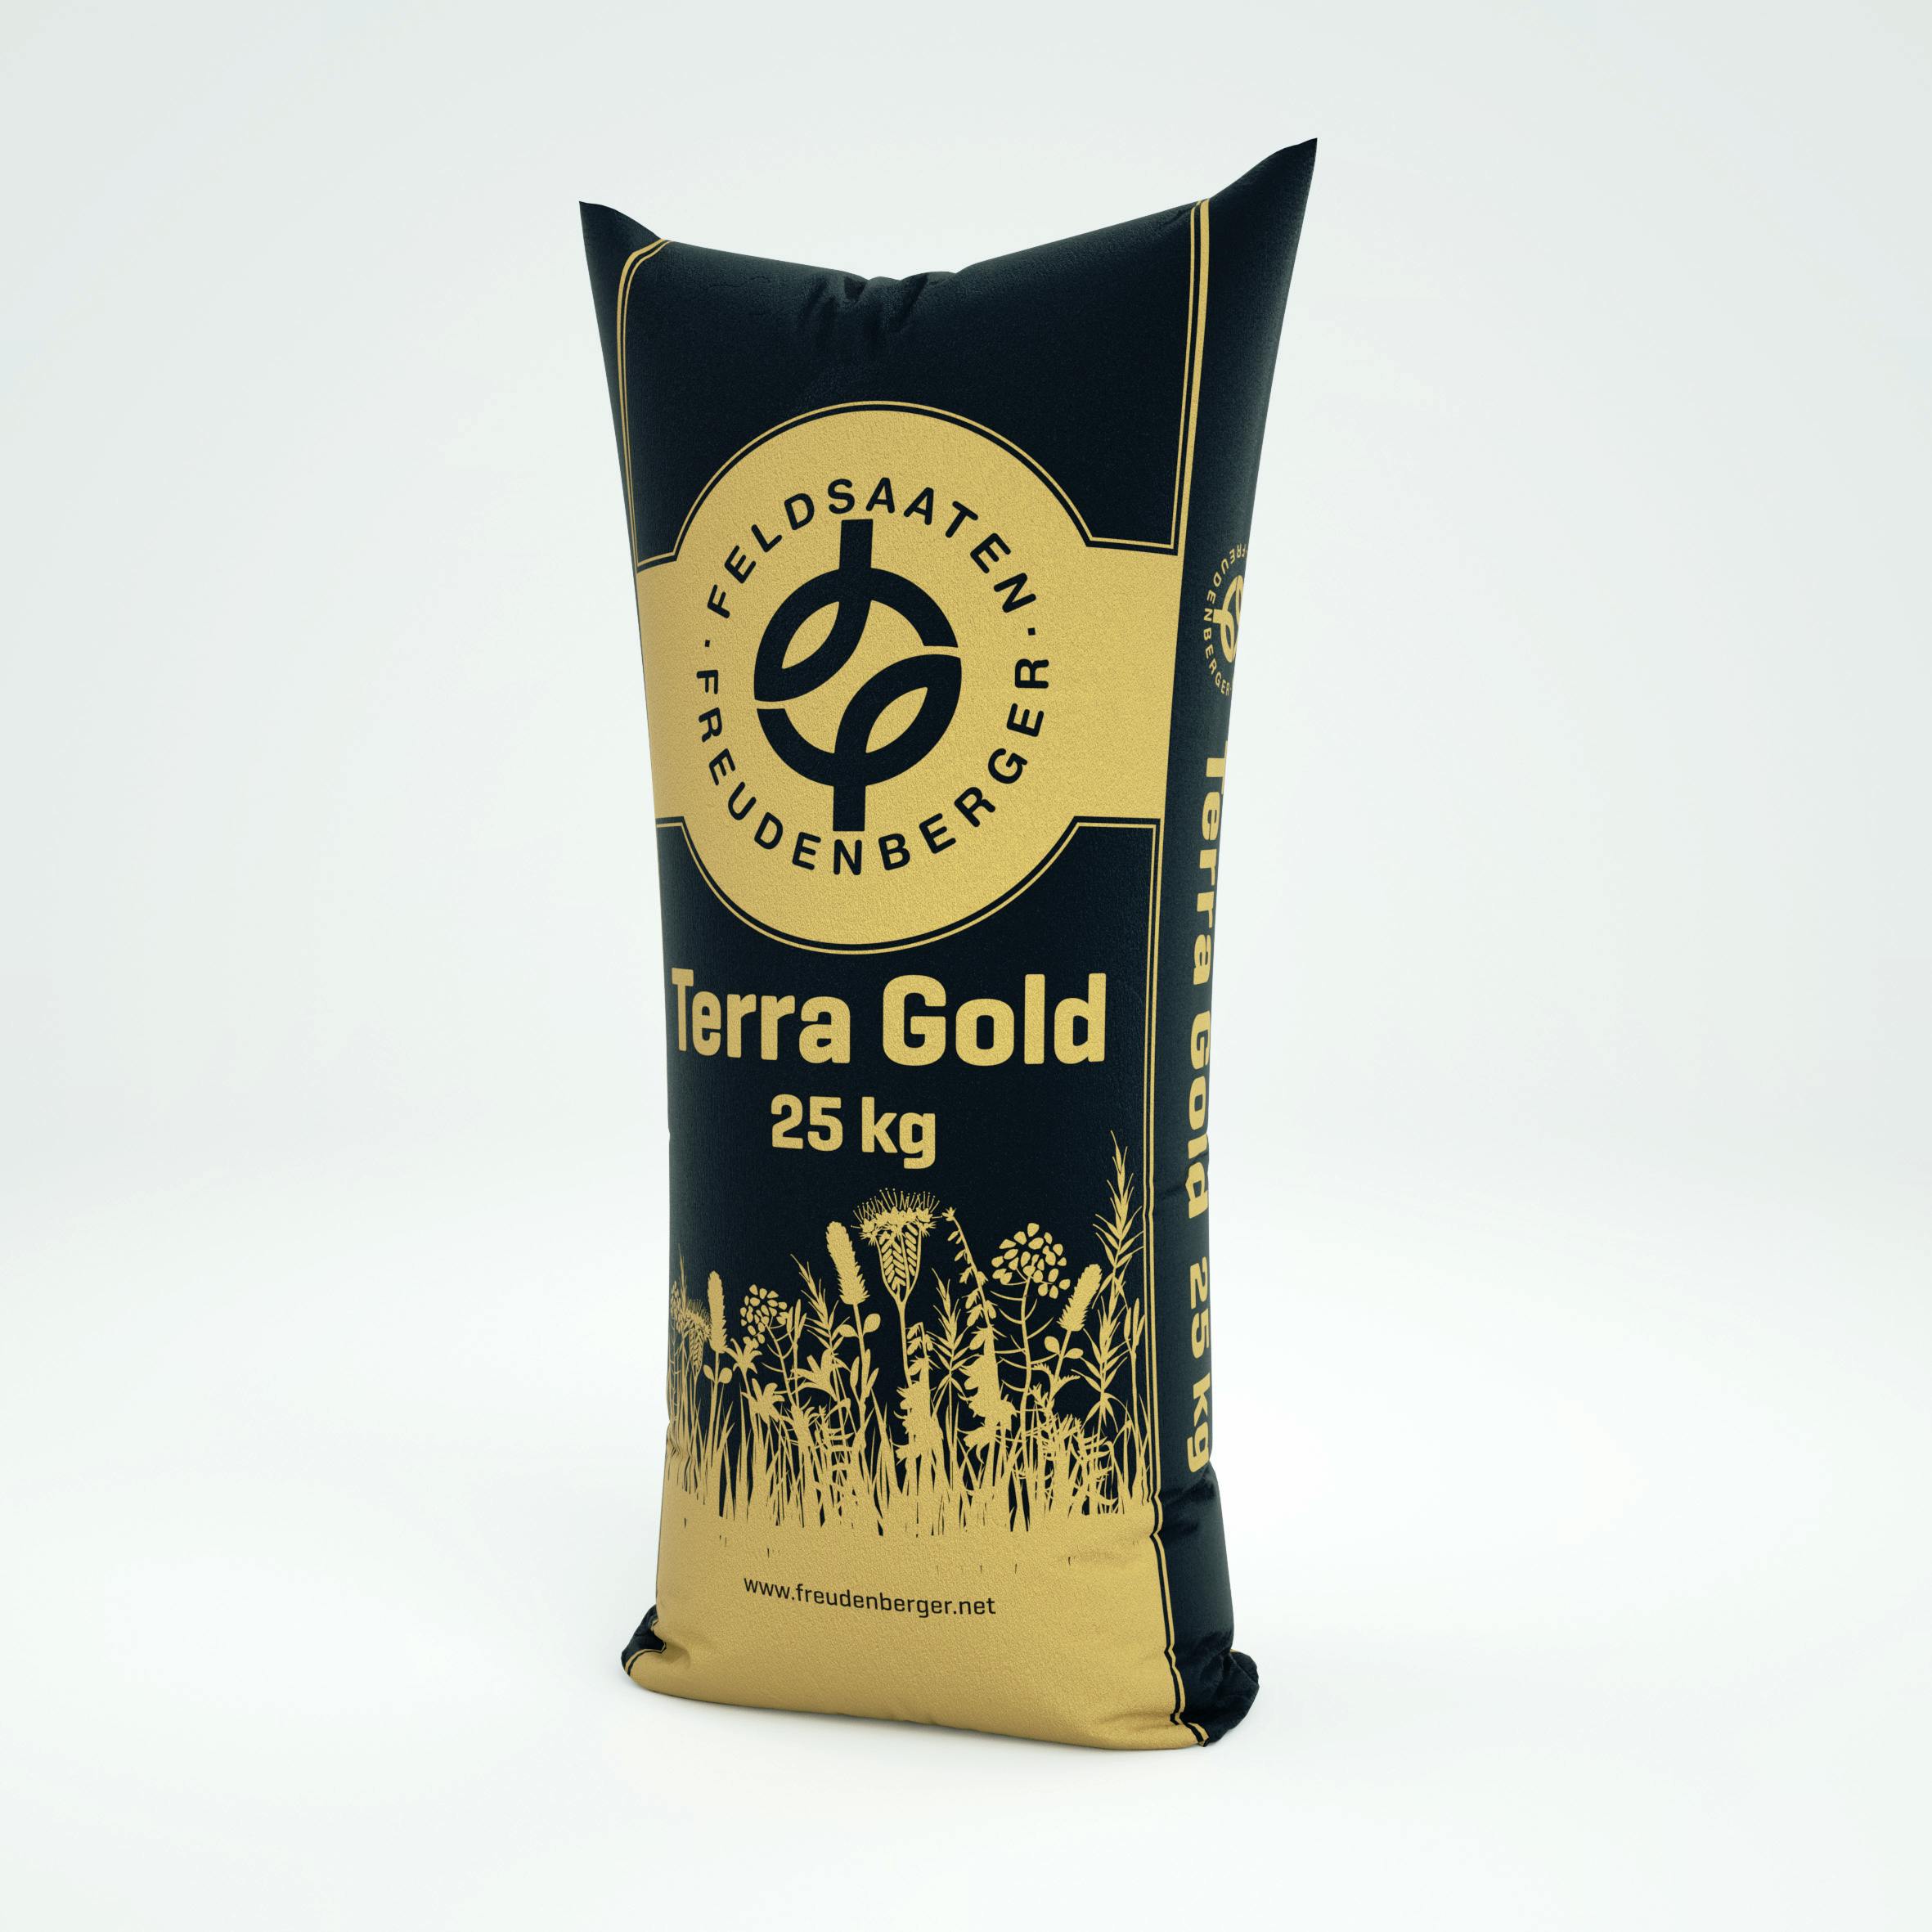 TERRA GOLD® TG-16 Winterfit